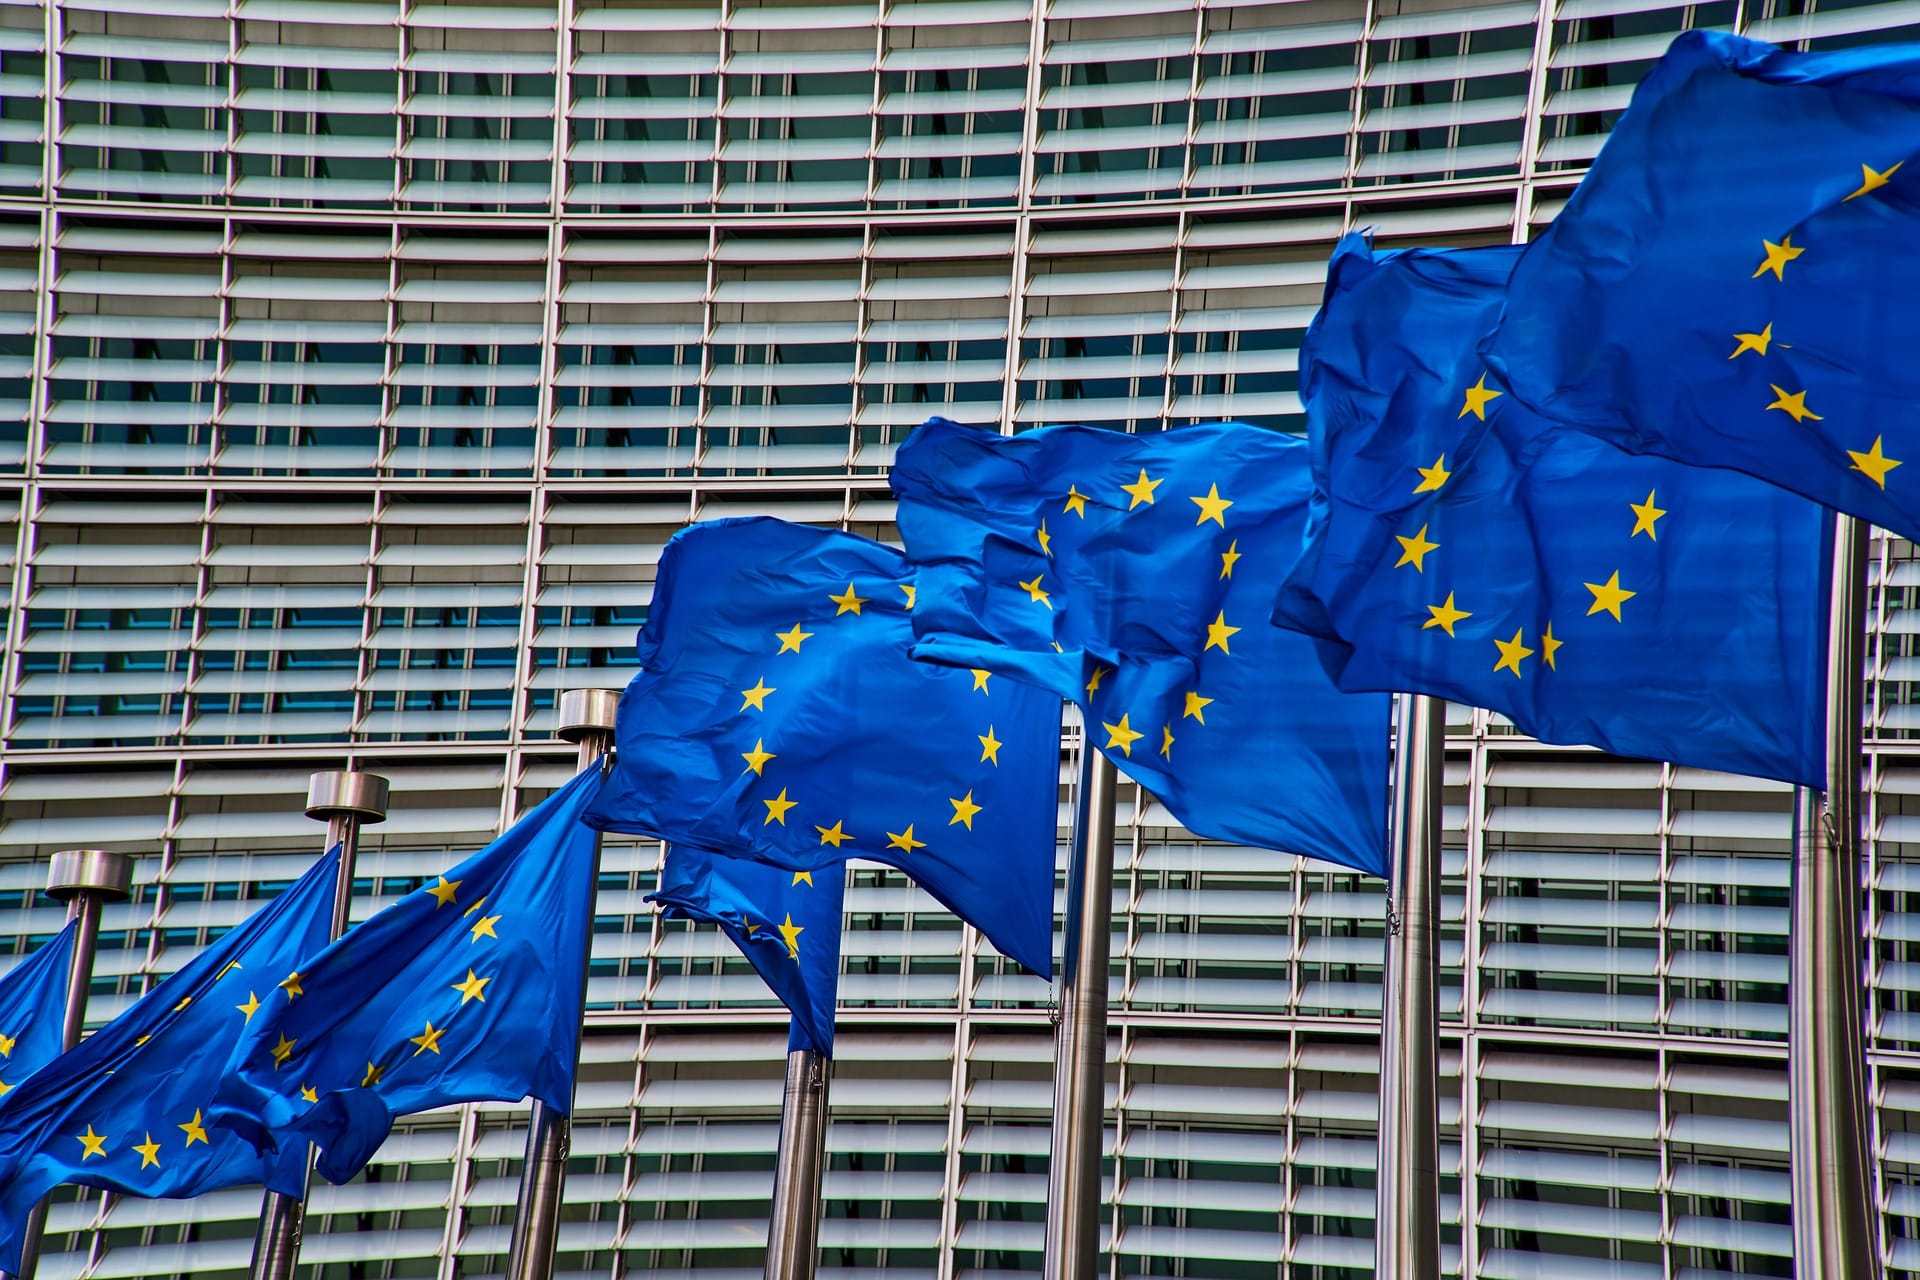 La storia della bandiera dell’UE, dal disegno di Arsène Heitz al sogno dell’Europa unita